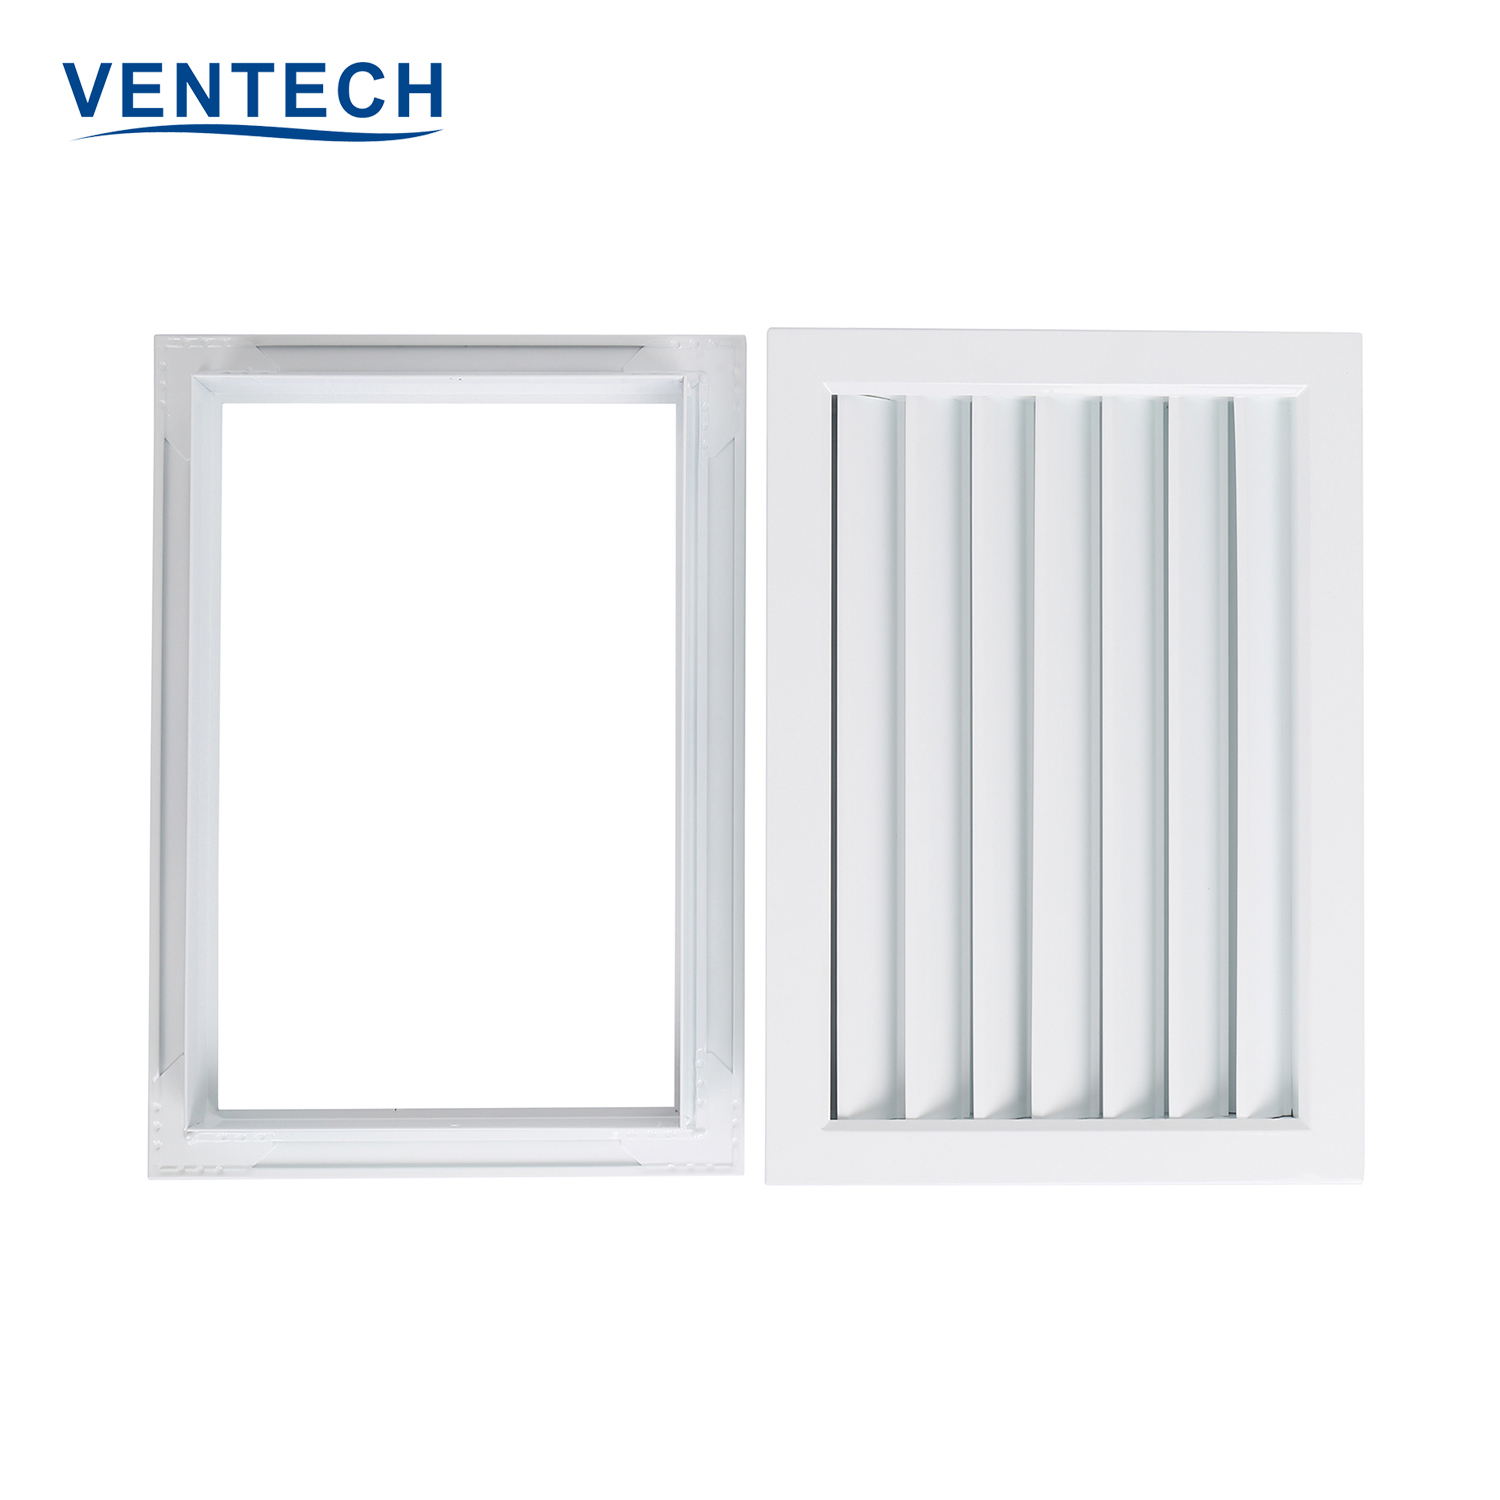 Ventech metal ventilation grilles series for sale-1